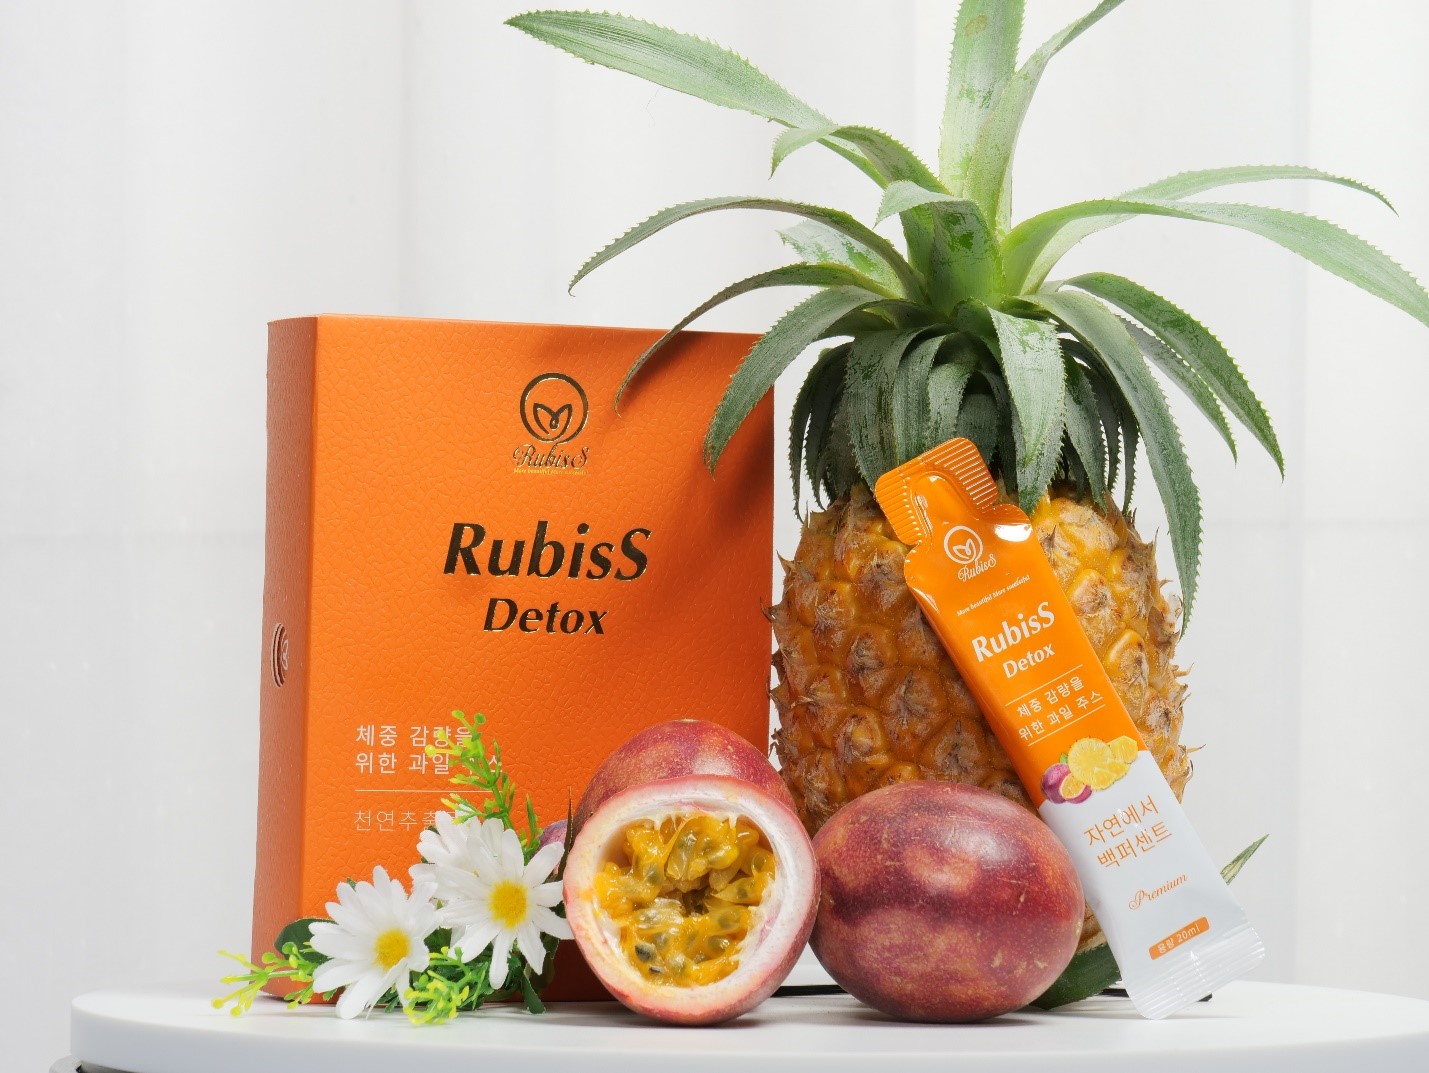 RubisS Detox - giảm cân an toàn từ thành phần nước ép trái cây